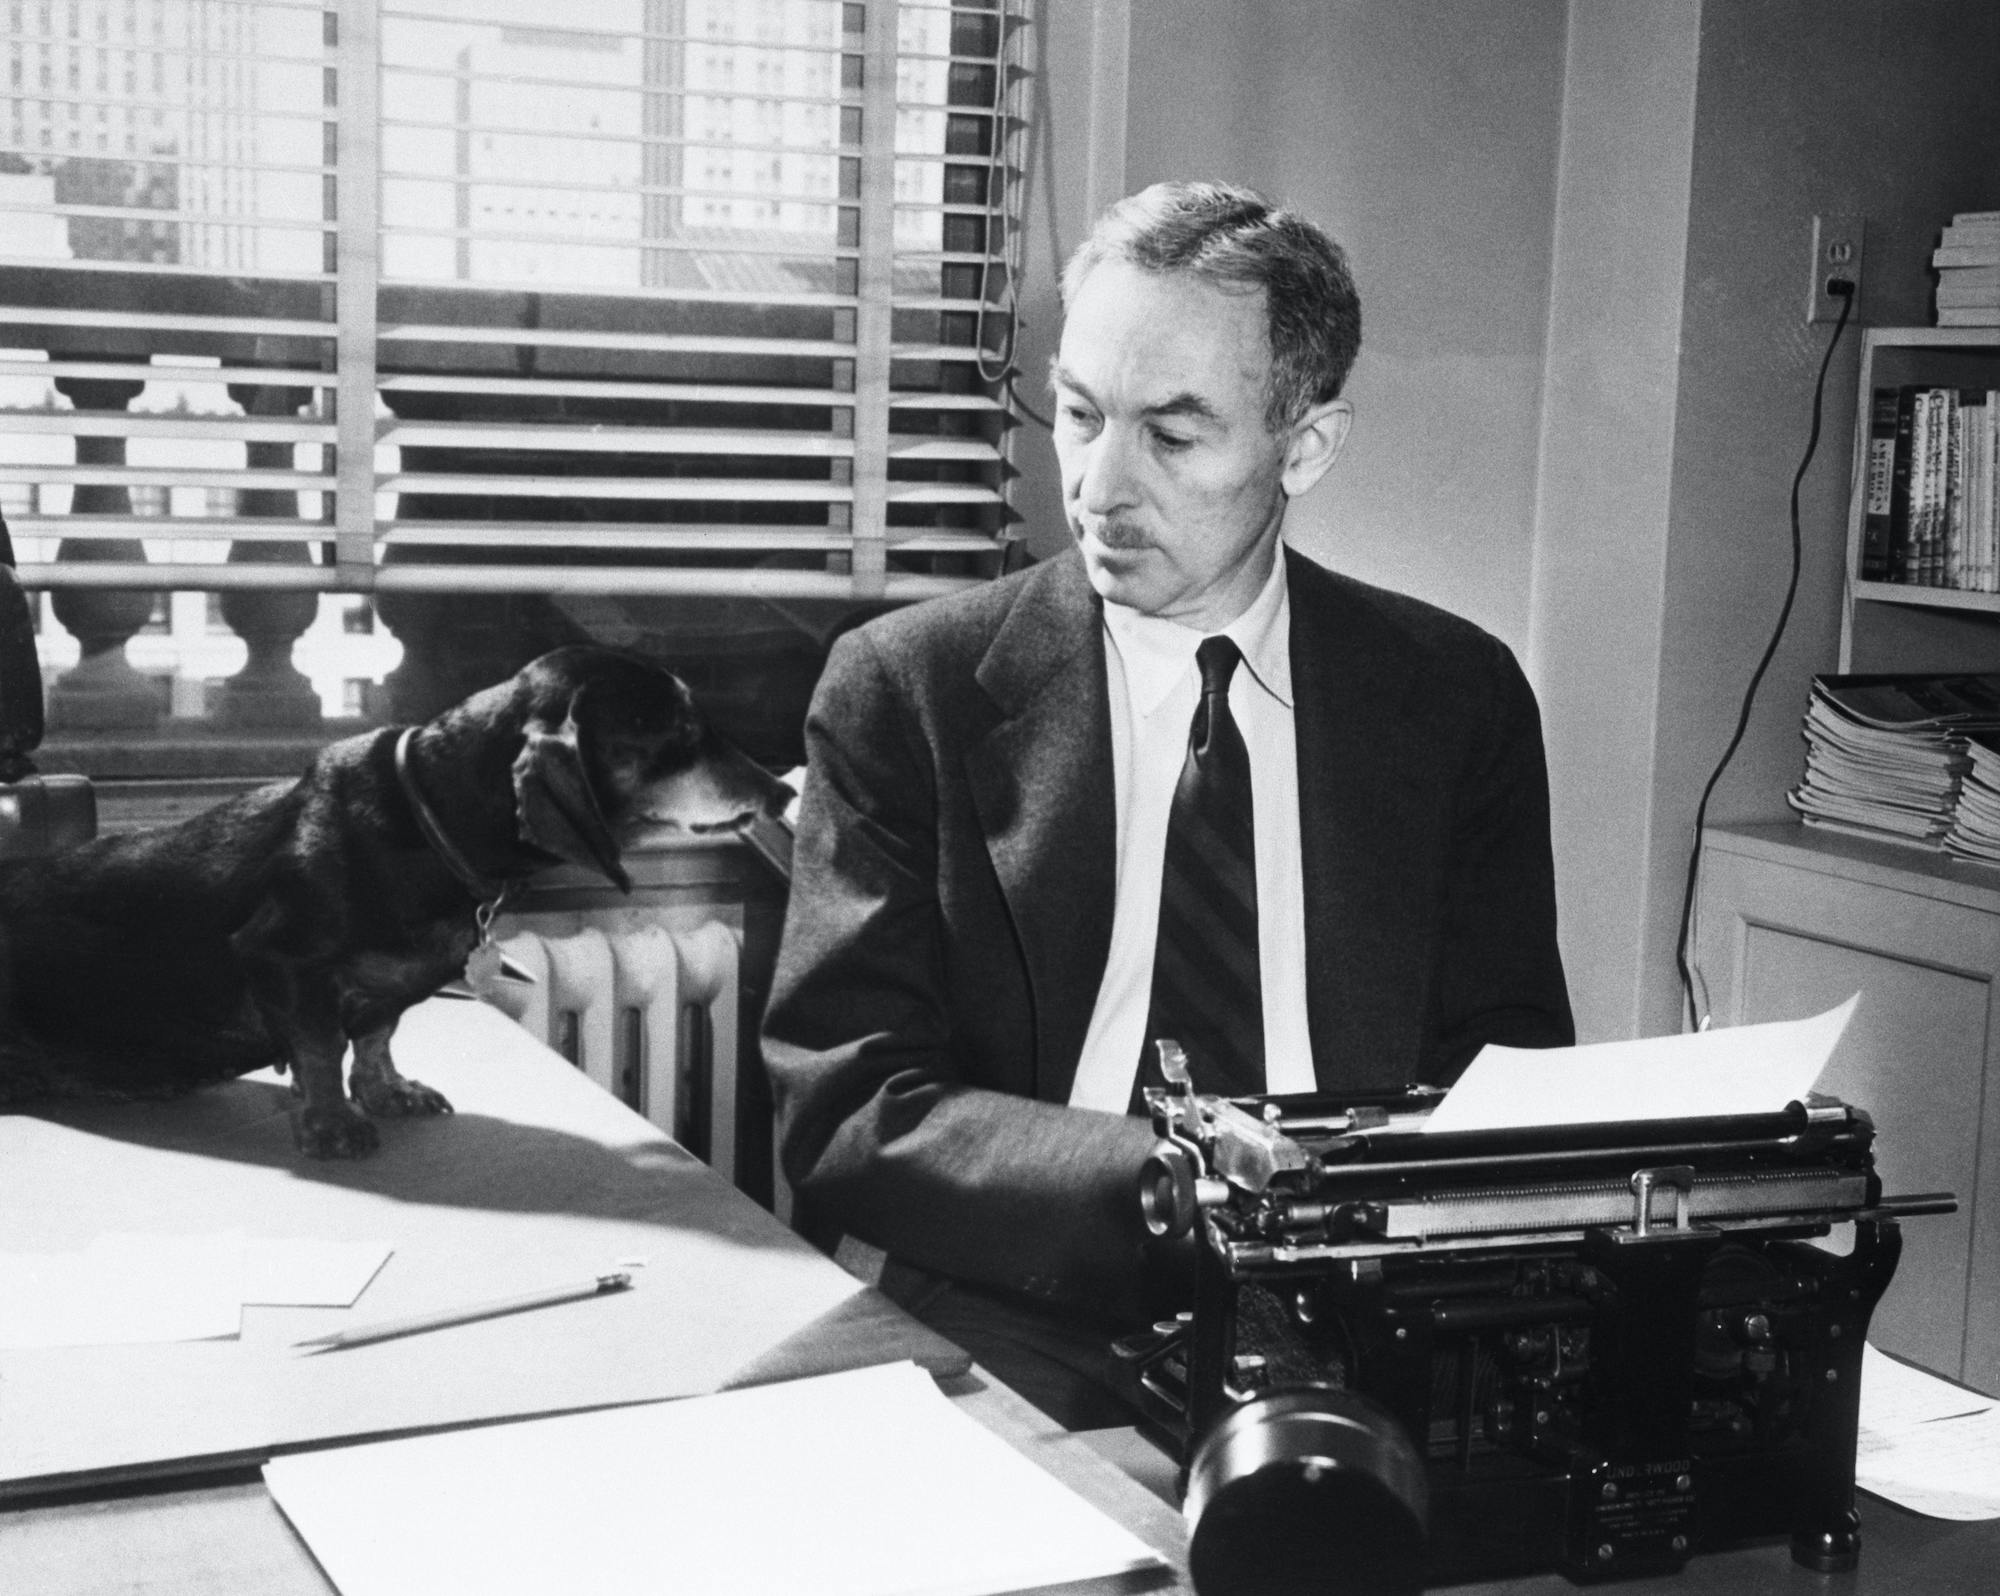 E.B. White at Typewriter with Dog Writer typing with dog